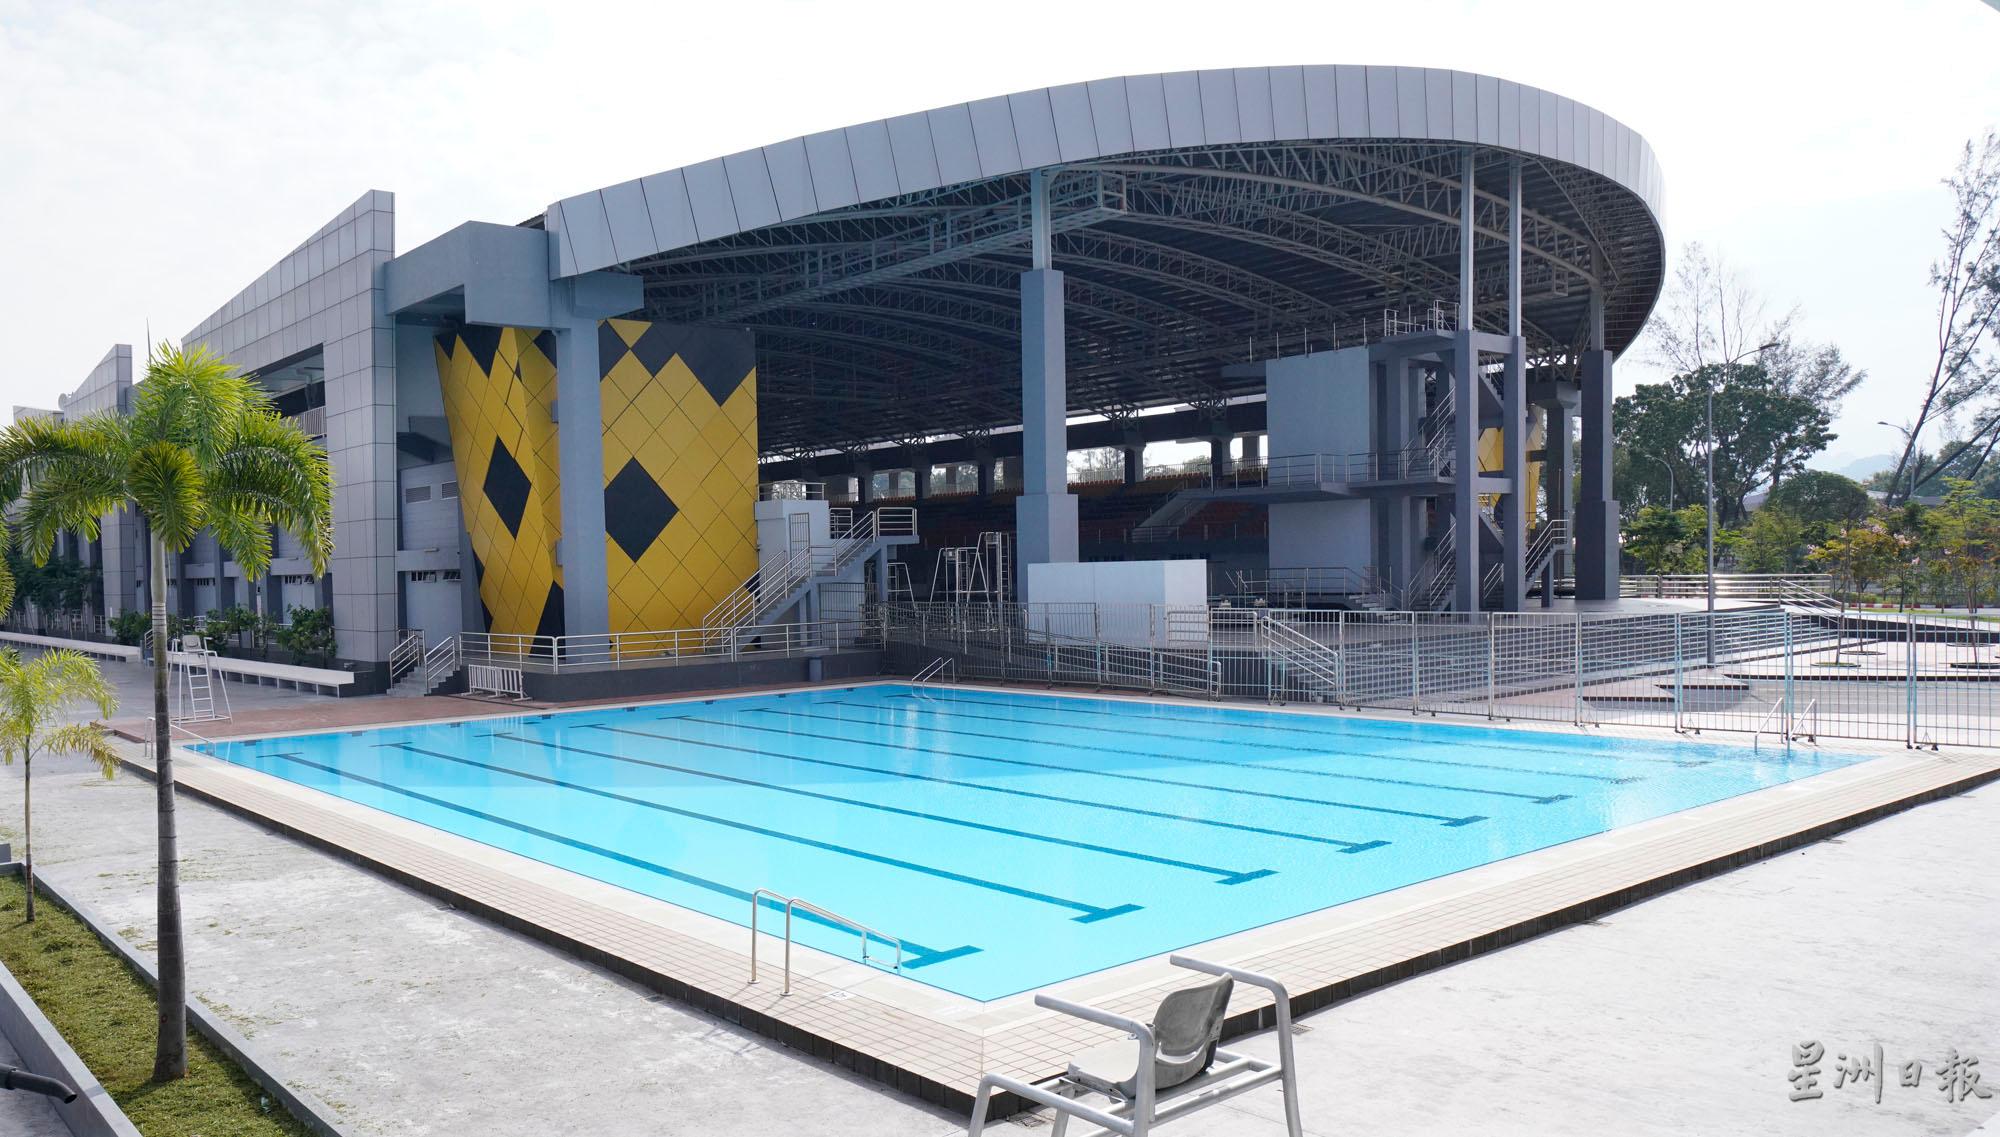 25公尺的公共训练泳池同个时段允许25人进入泳池。